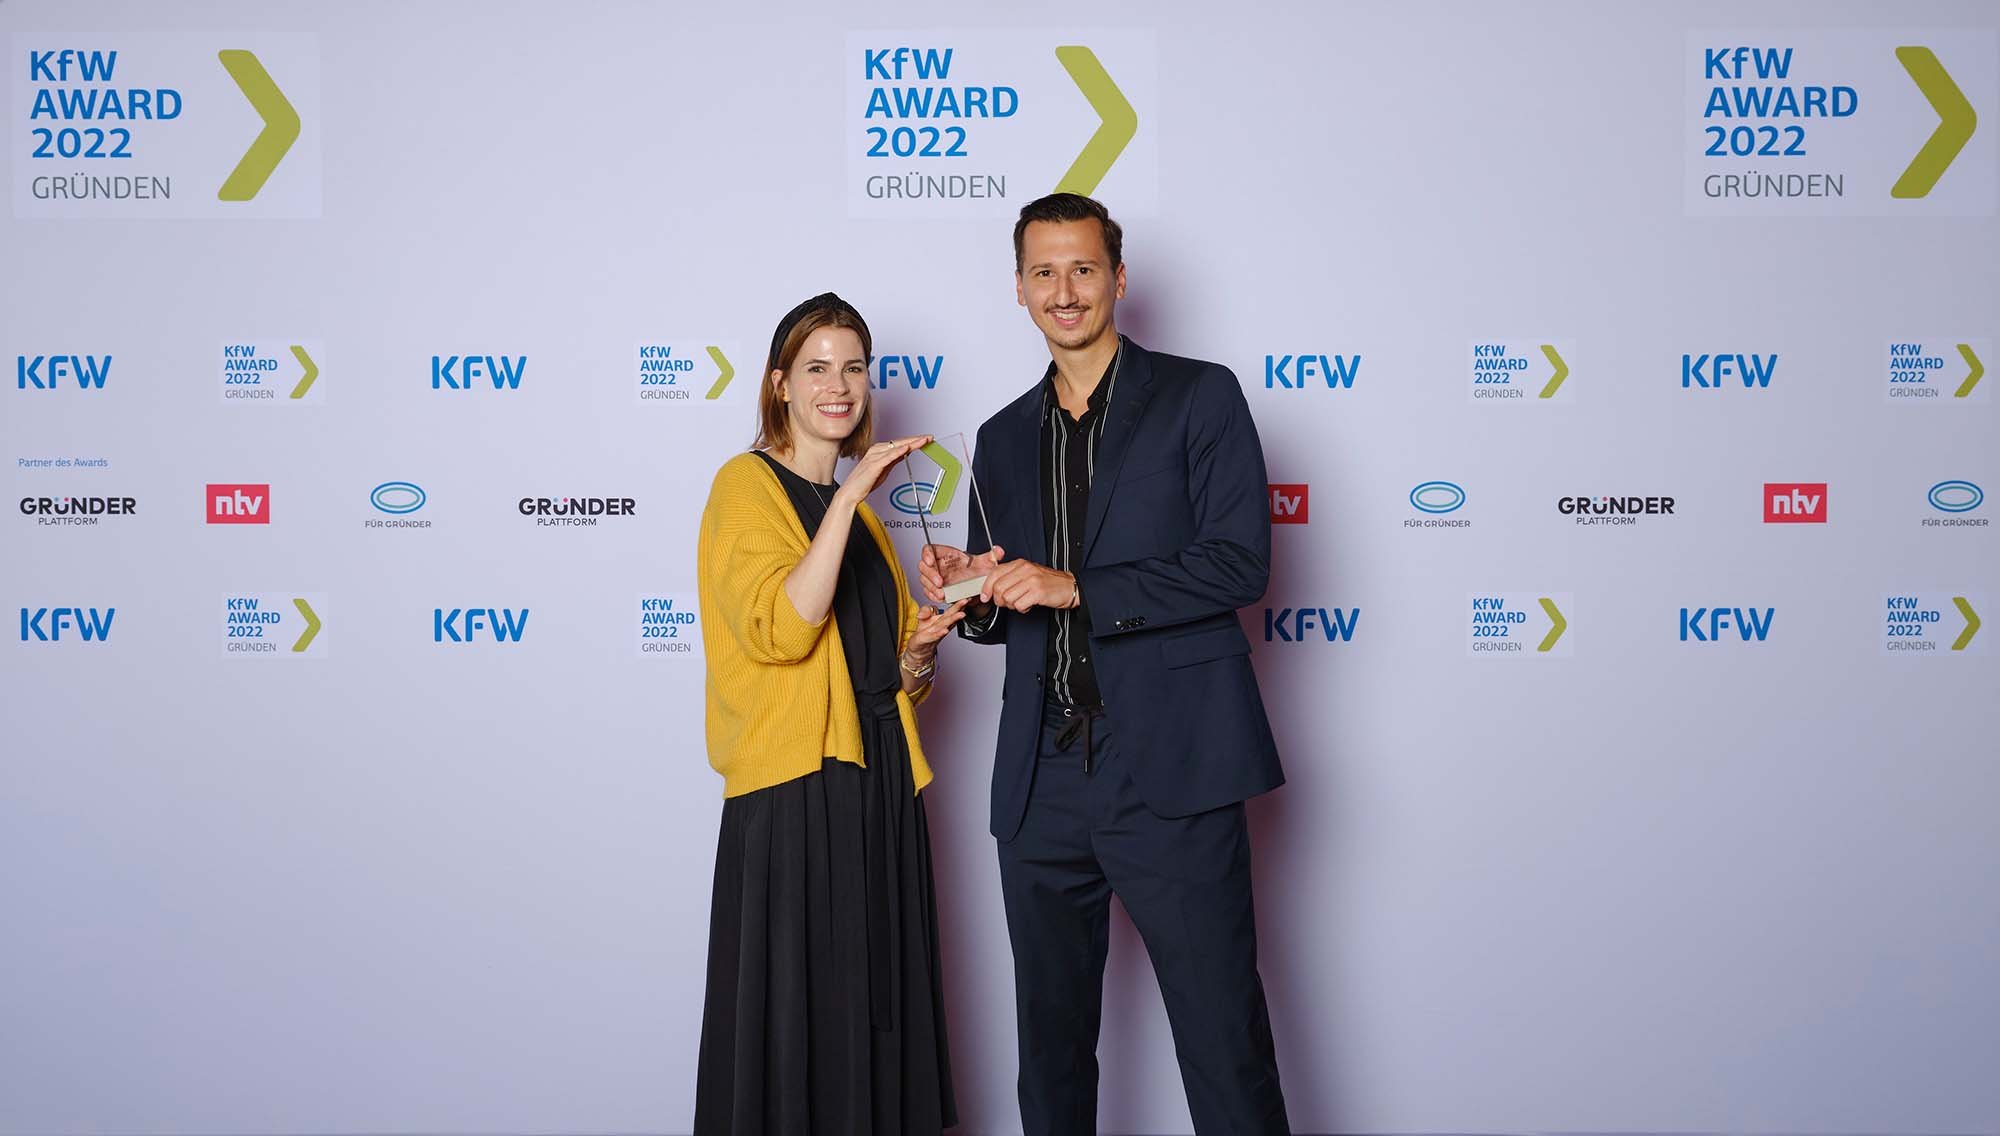 Preisverleihung des KfW Award Gründen 2022